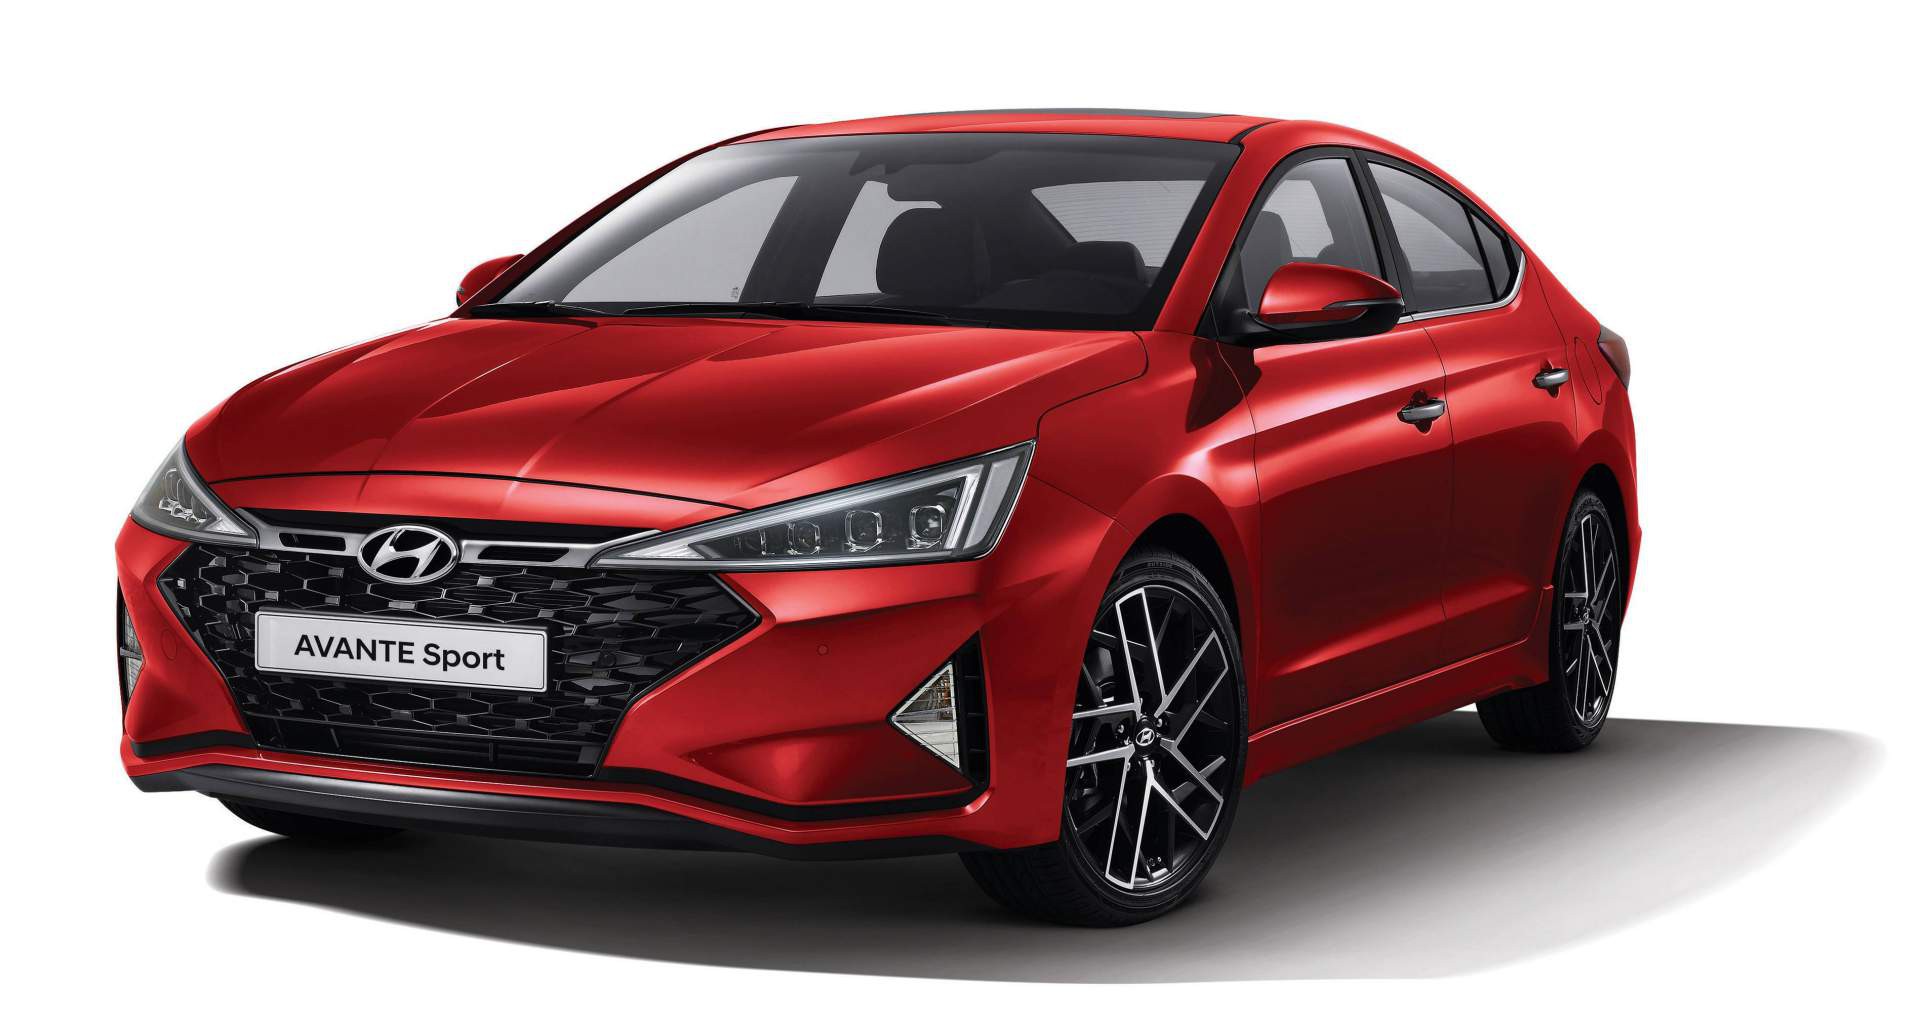 Hyundai Elantra bản Sport 2019 có gì khác biệt so với bản thường